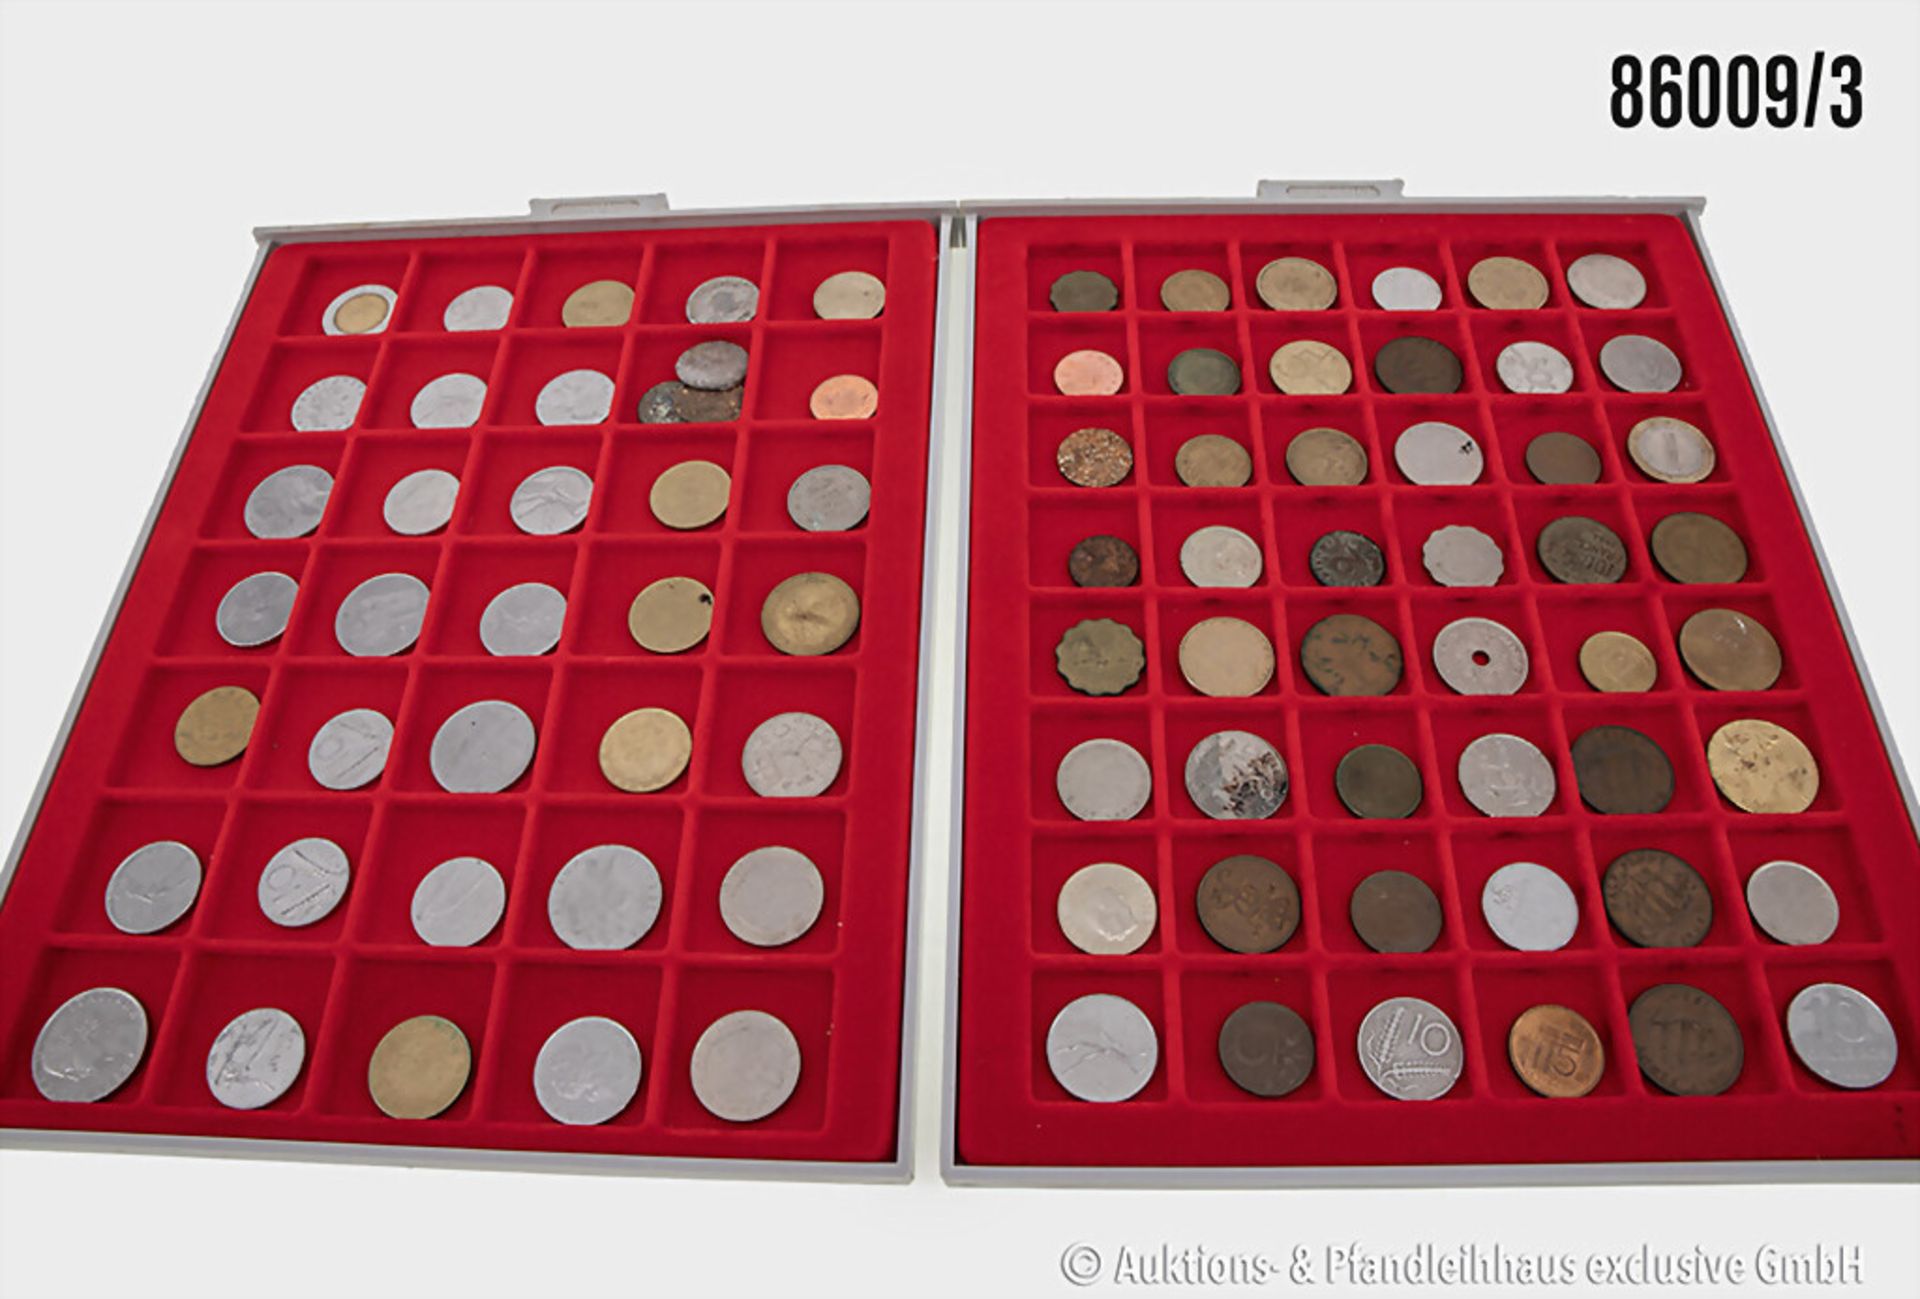 Konvolut Münzen in 6 Lindner Münzboxen, verschiedene Münzen Europa/Welt sowie 3 Münzen ... - Image 3 of 3